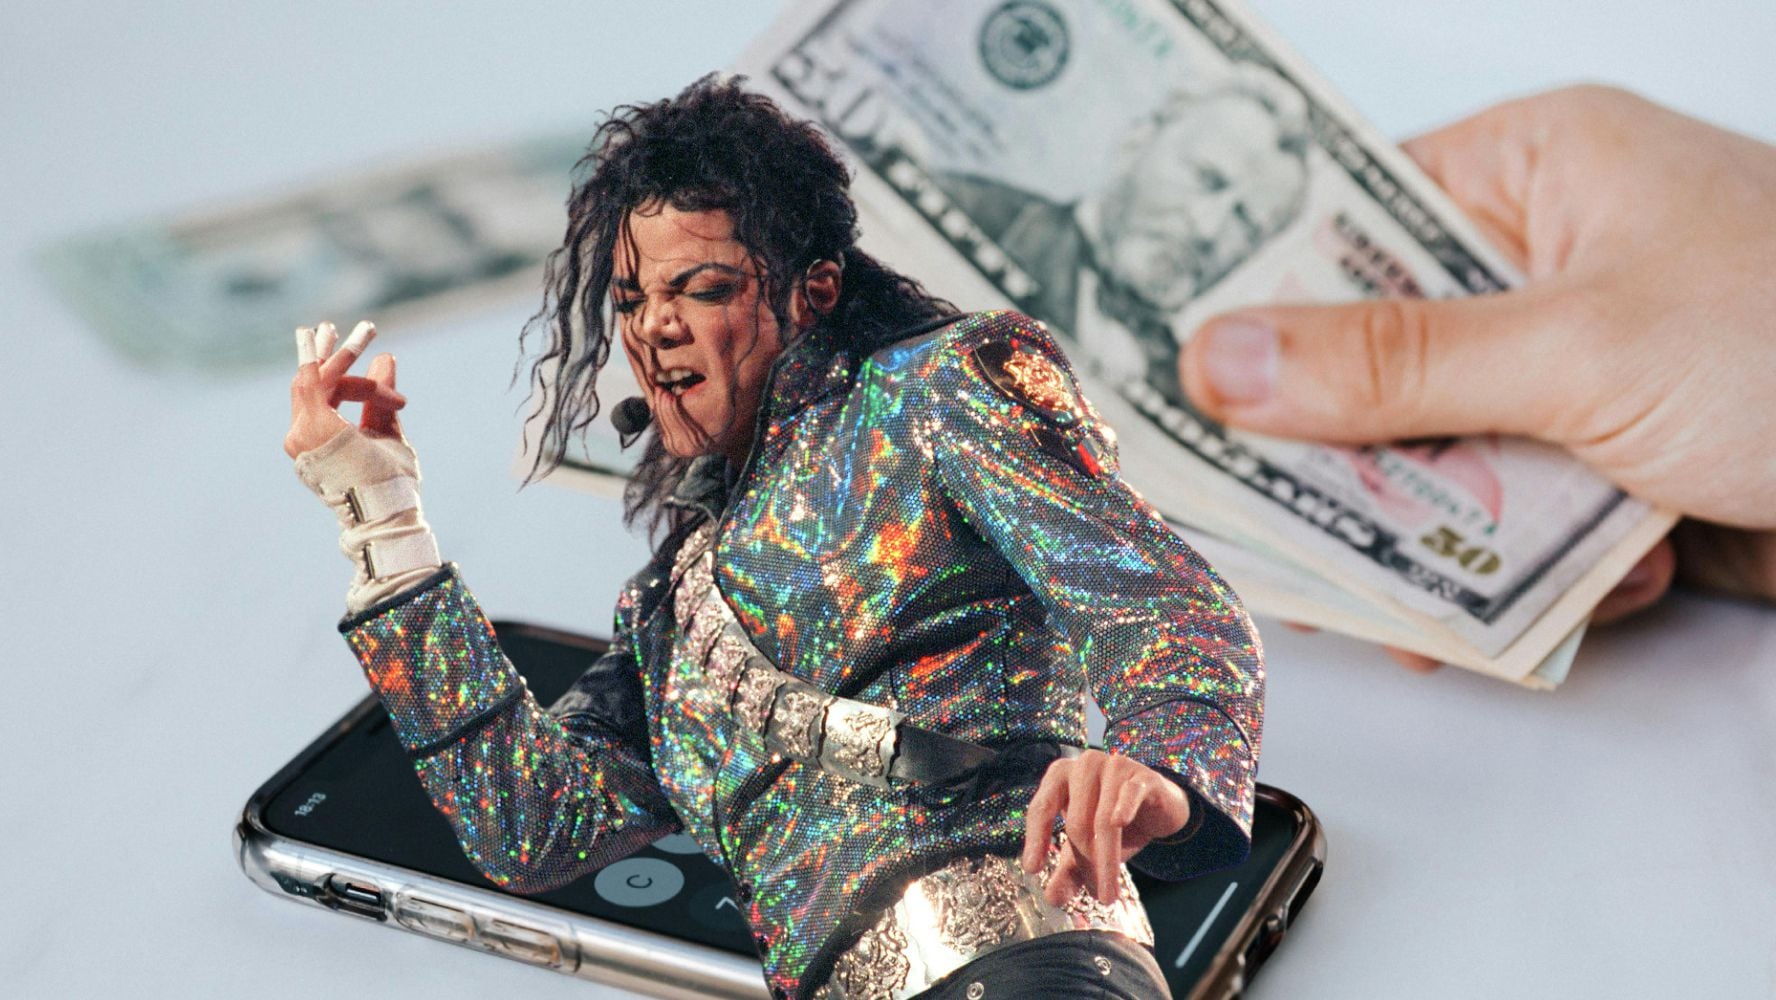 Andaba ‘hasta el cuello’: Michael Jackson tenía una deuda de 500 mdd al morir, aseguran documentos